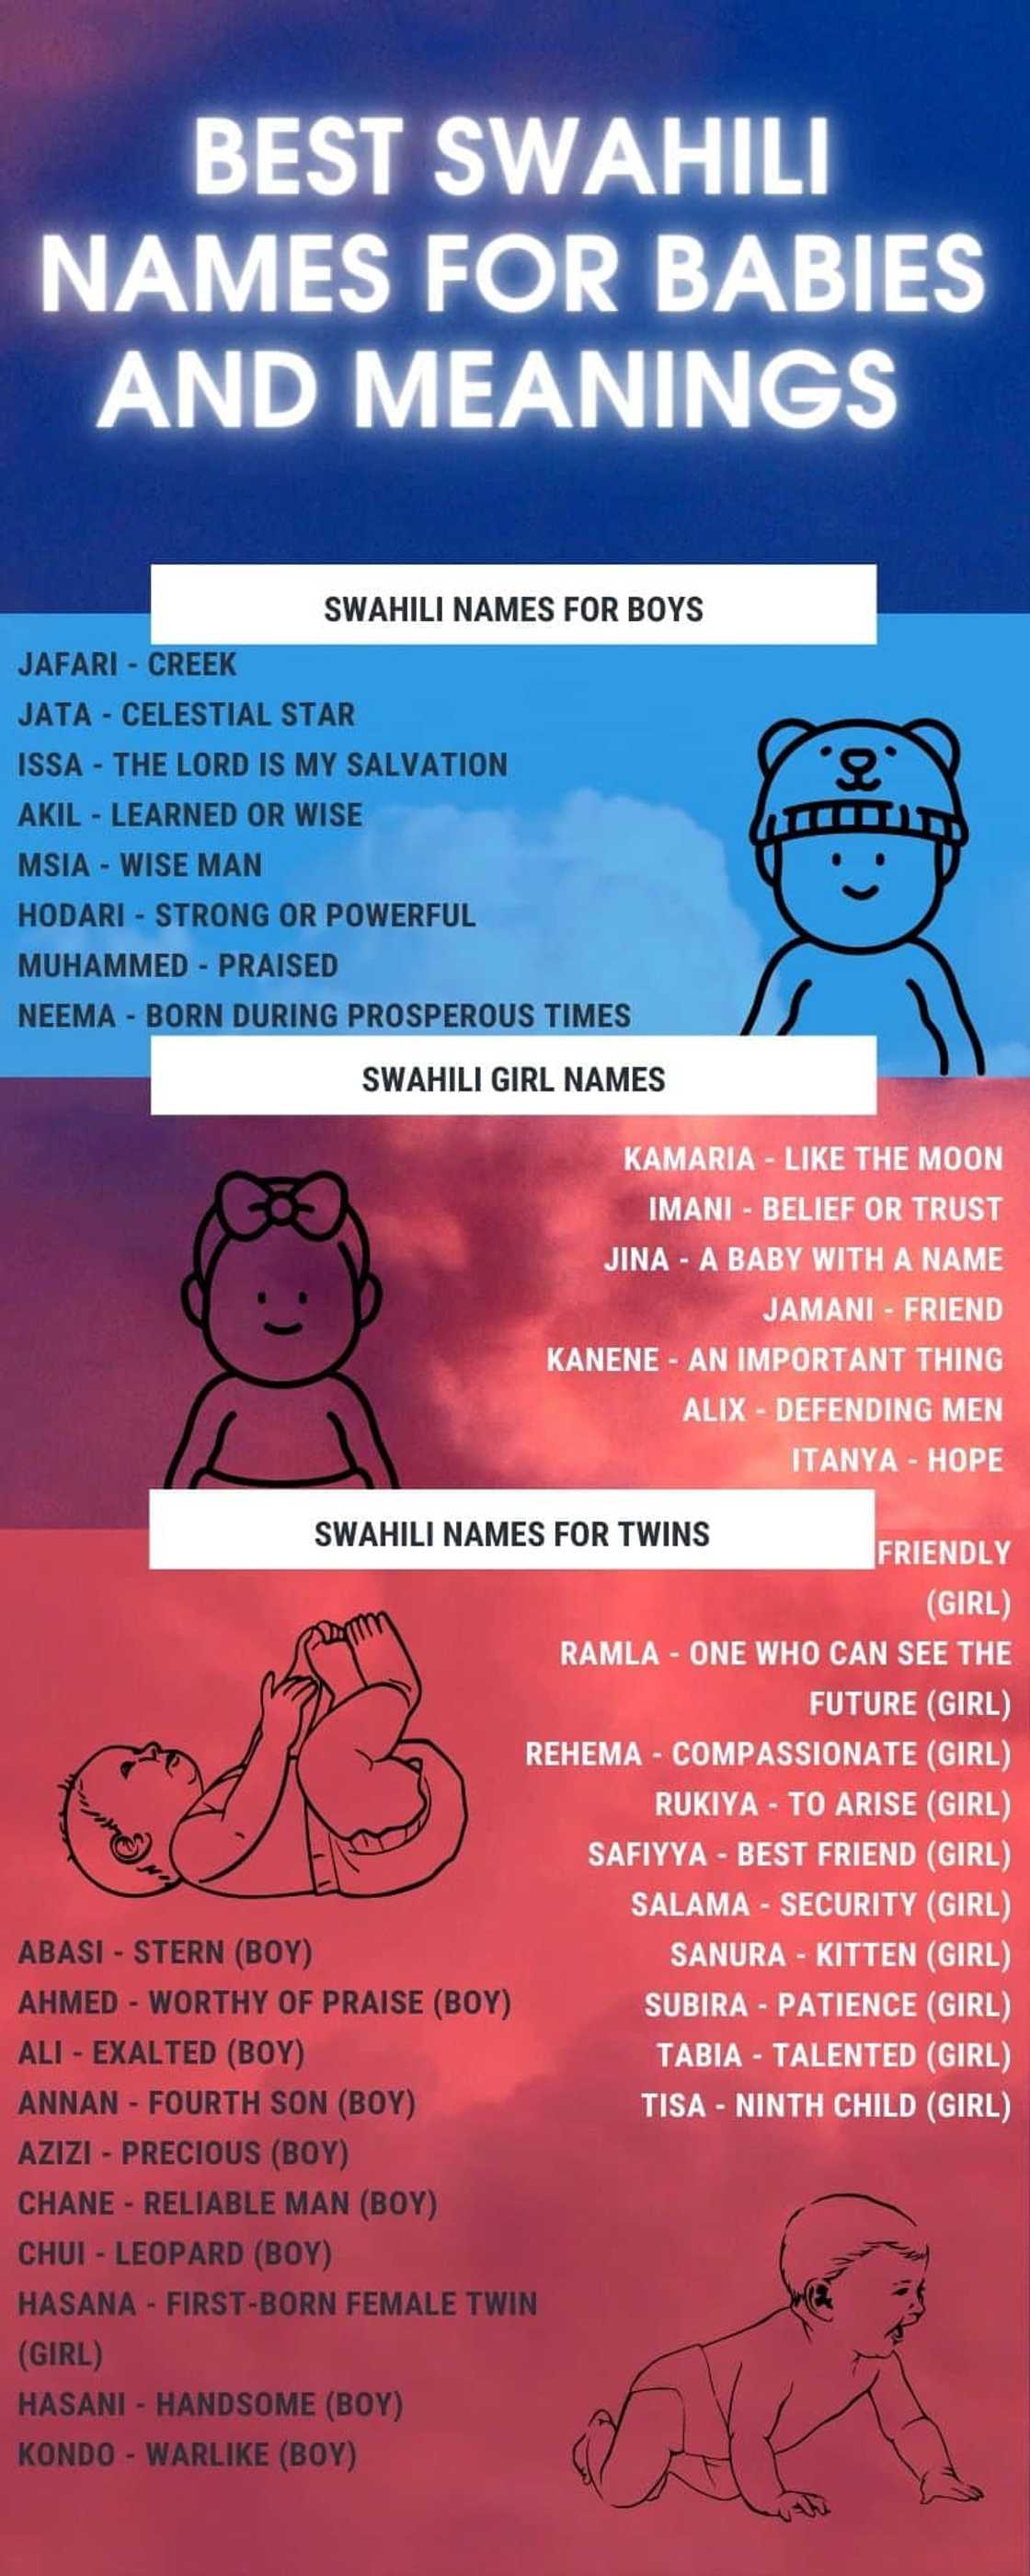 Best Swahili names